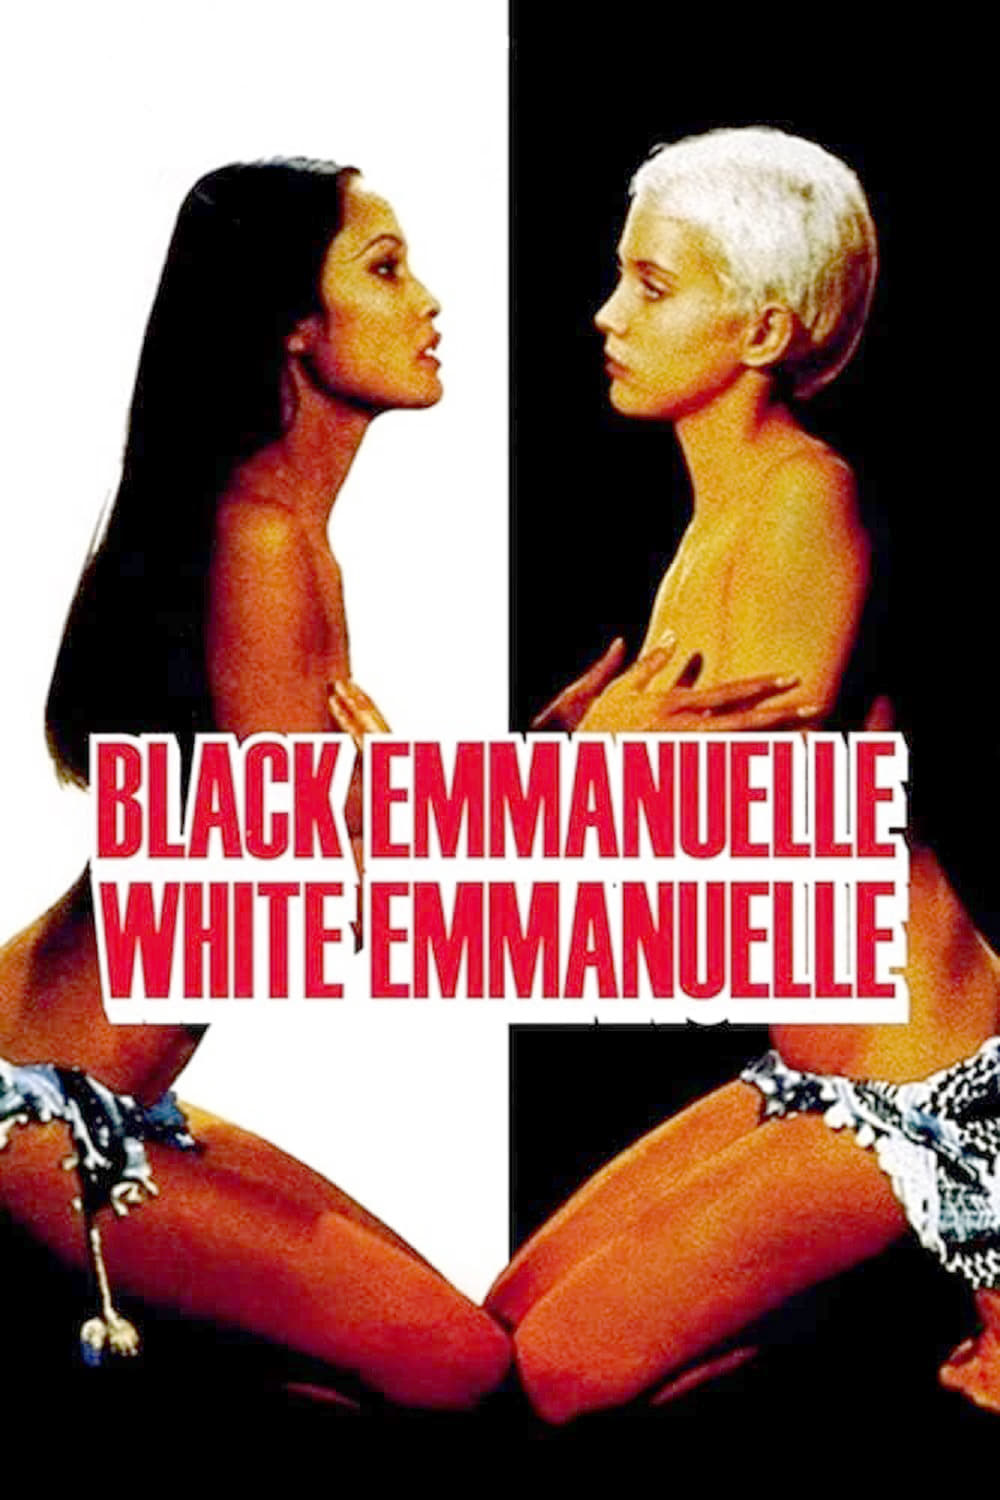 Black Emmanuelle, White Emmanuelle (1976)